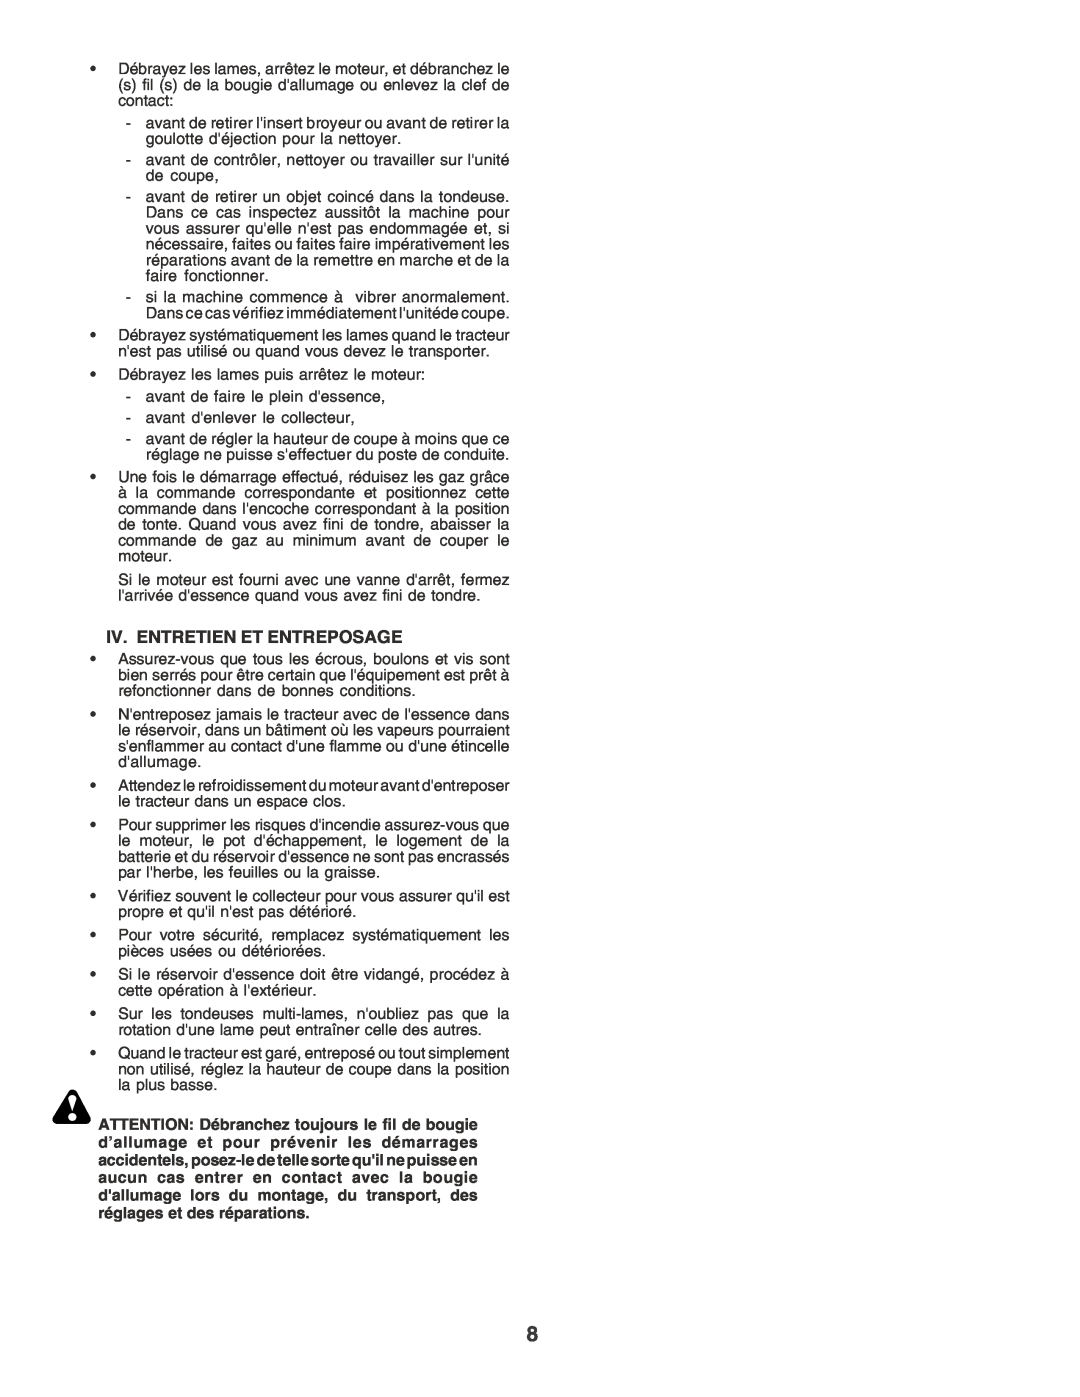 Husqvarna LT135 instruction manual Iv. Entretien Et Entreposage 